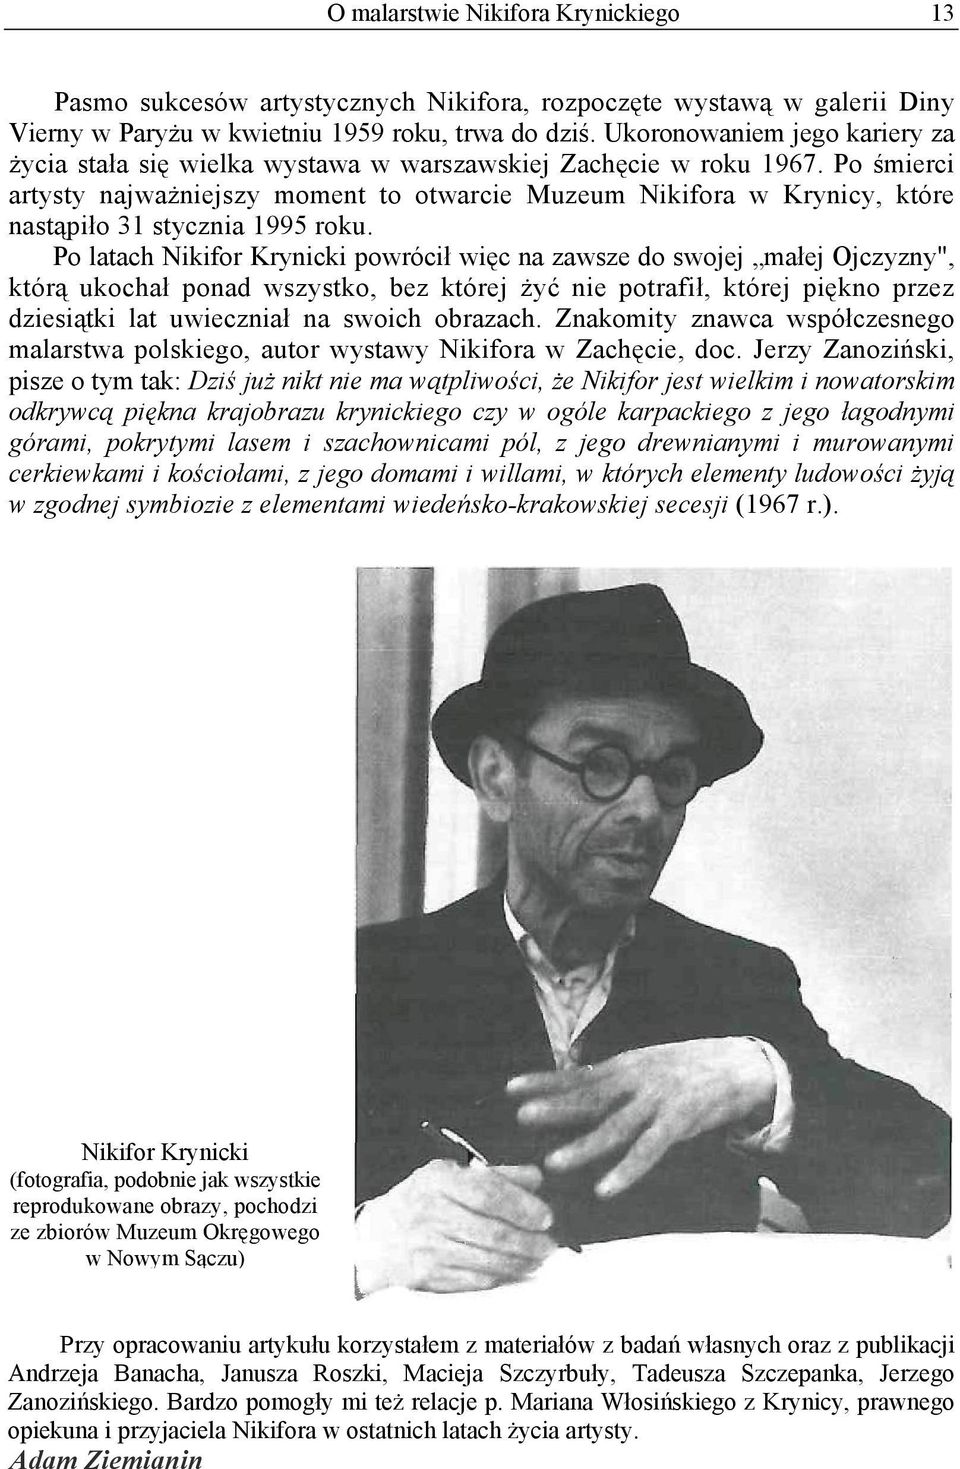 Po śmierci artysty najważniejszy moment to otwarcie Muzeum Nikifora w Krynicy, które nastąpiło 31 stycznia 1995 roku.